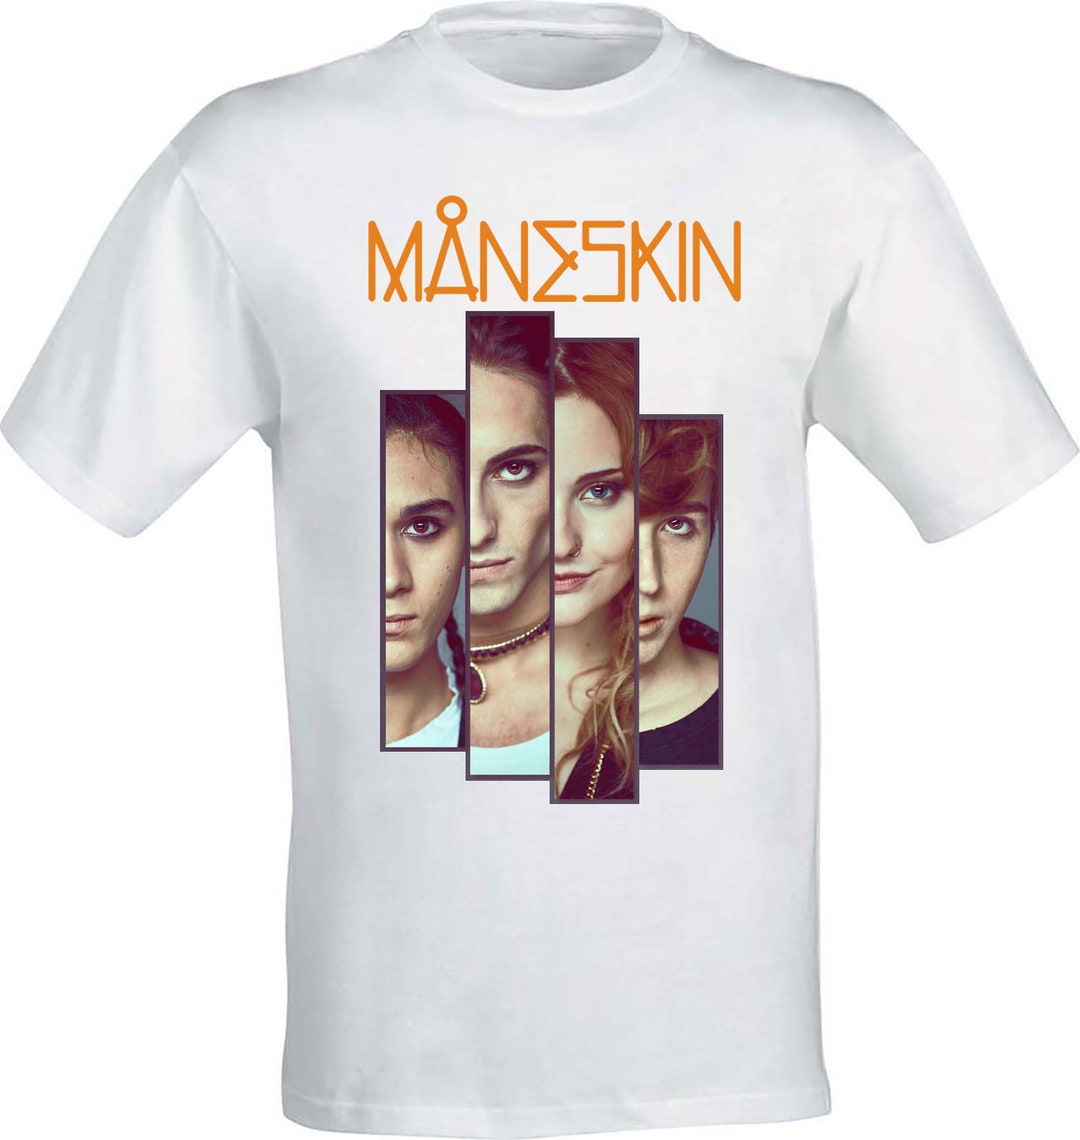 Maneskin V.1 T-shirt 100% Cotton Unisex T-shirt Child & - Etsy